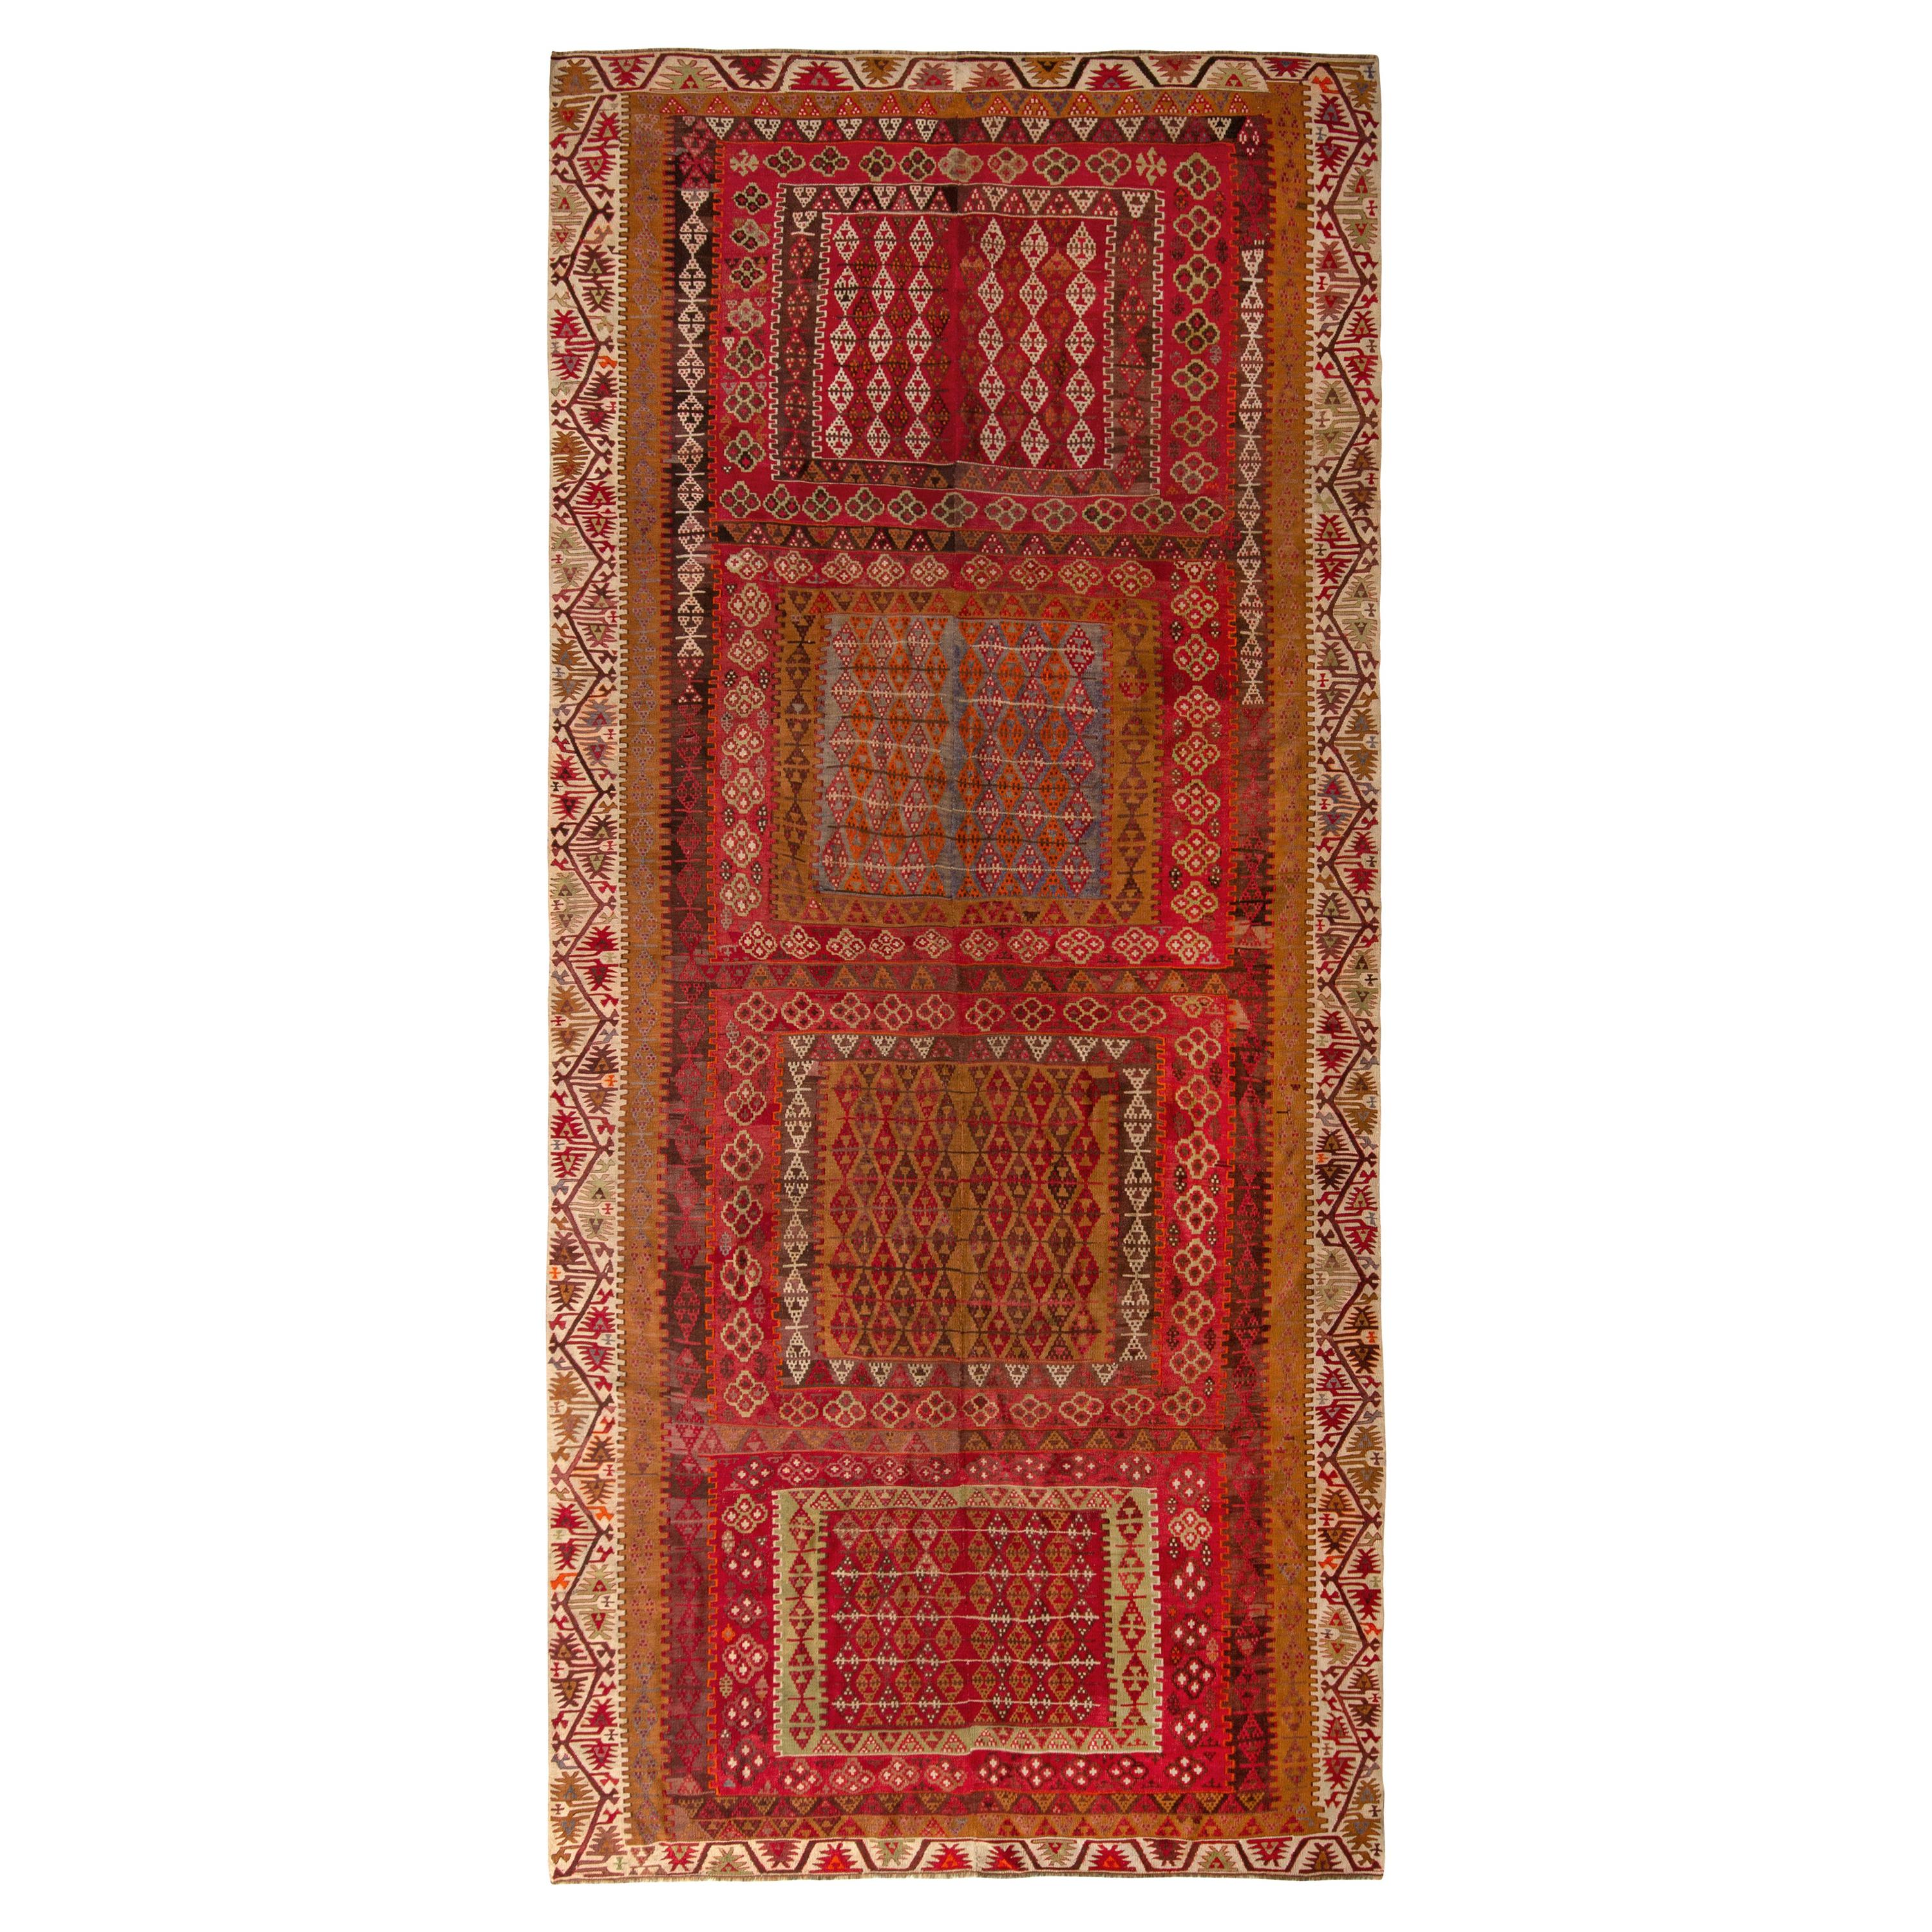 Vintage Kayseri Kilim Rug in Red and Brown Geometric pattern by Rug & Kilim For Sale